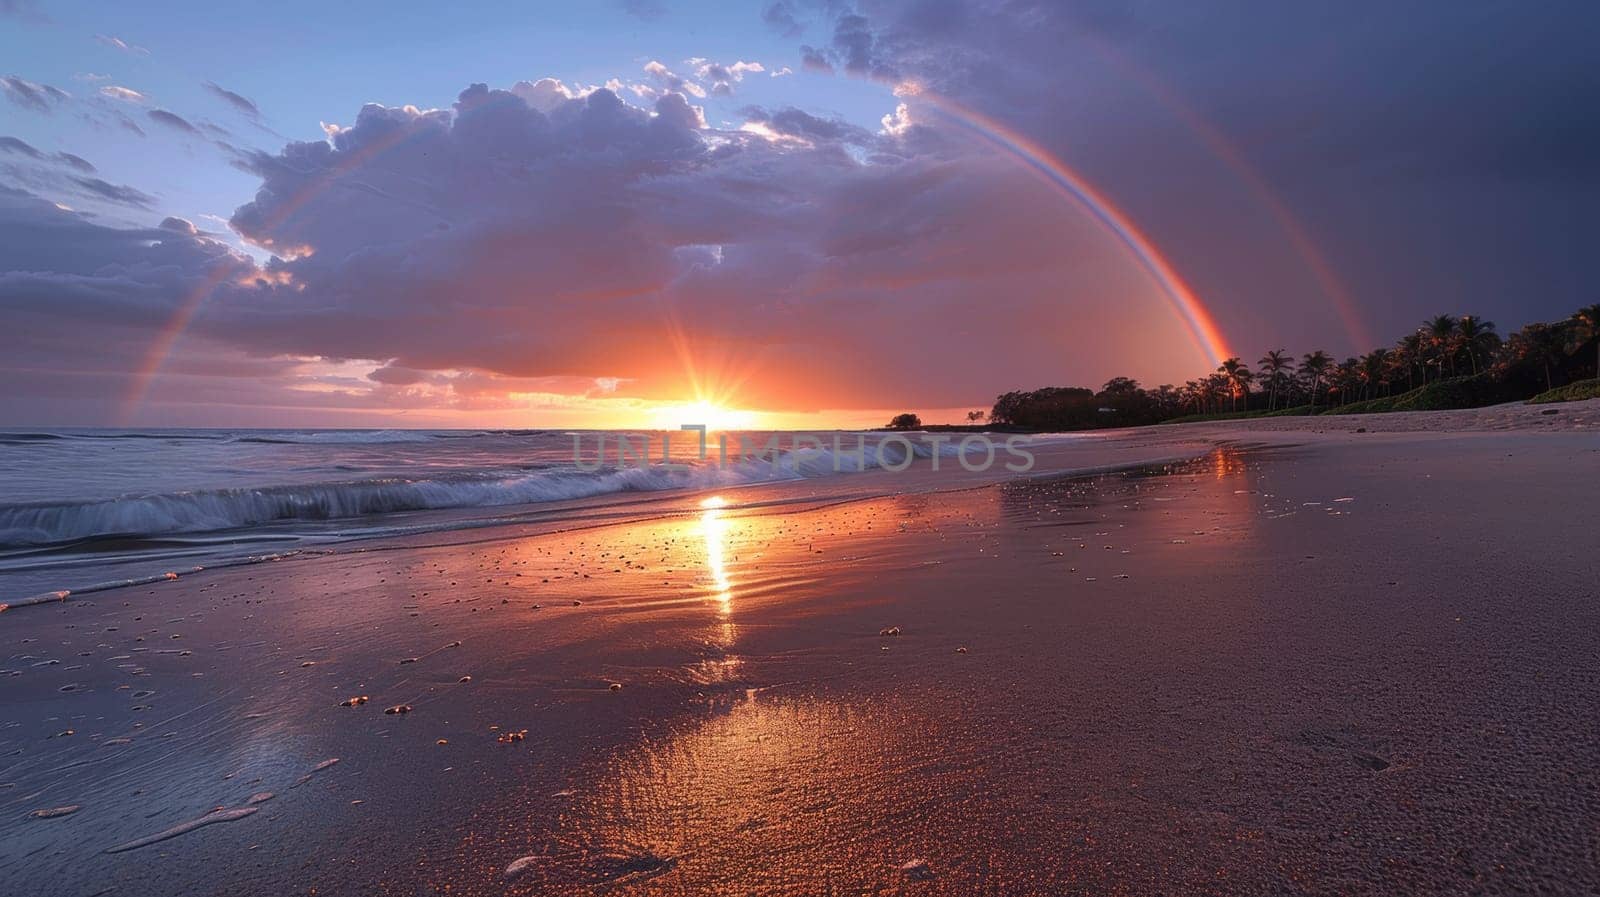 A double rainbow over the ocean at sunset on a beach